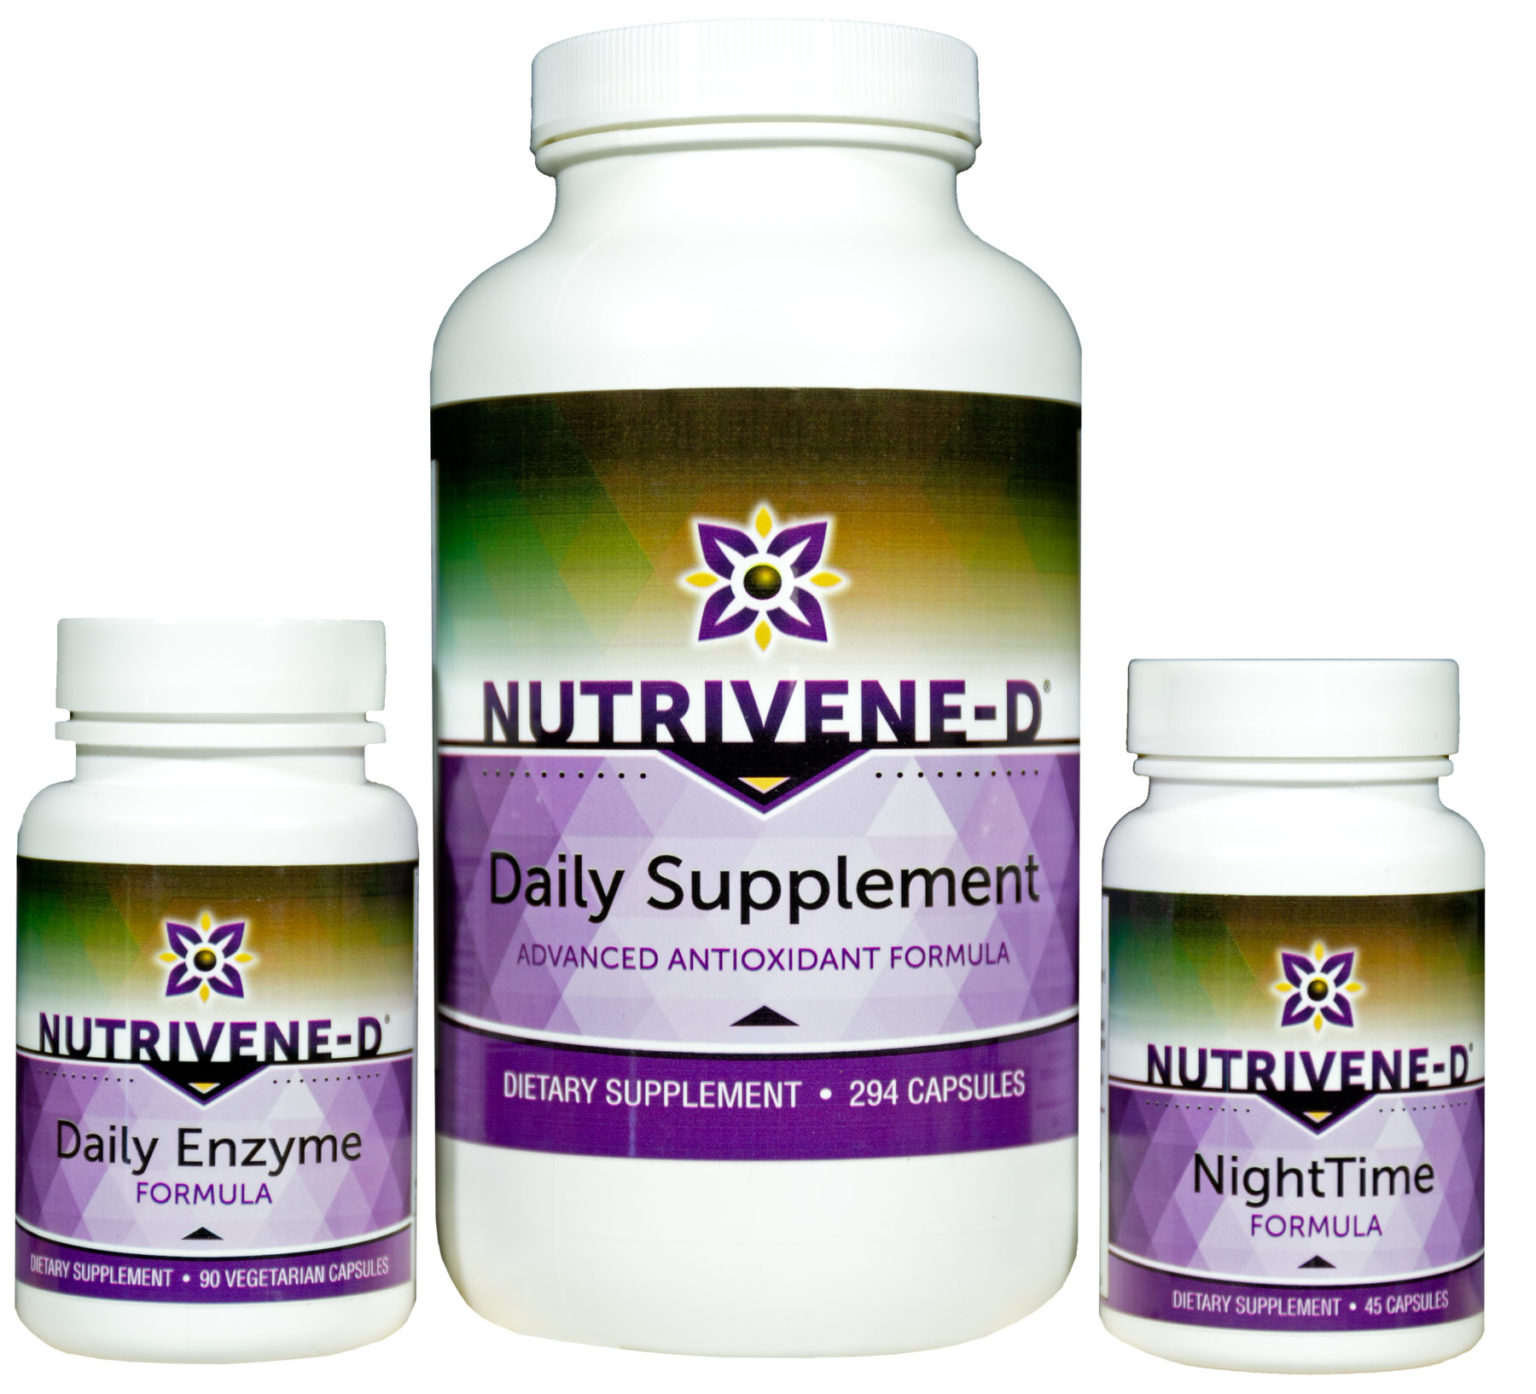 NuTriVene-D Daily Supplement Powder - Nutrivene